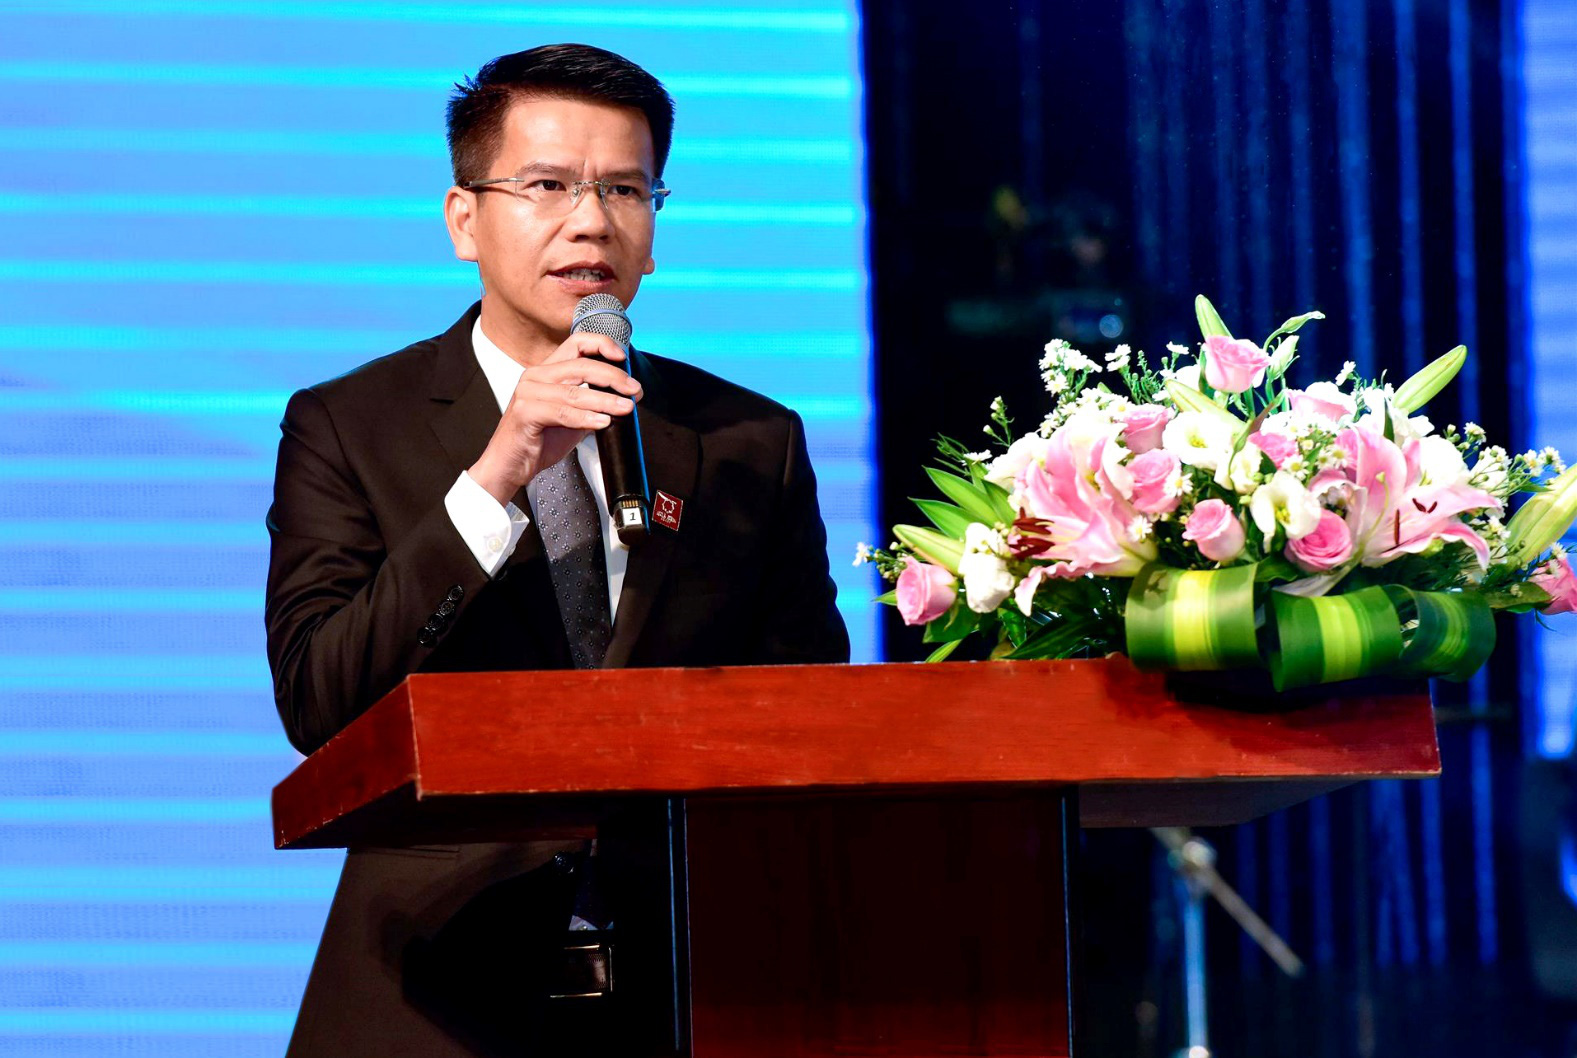 HSG: Từng bước hiện thực hóa mục tiêu trở thành nhà bán lẻ vật liệu xây dựng hàng đầu Việt Nam - Ảnh 2.